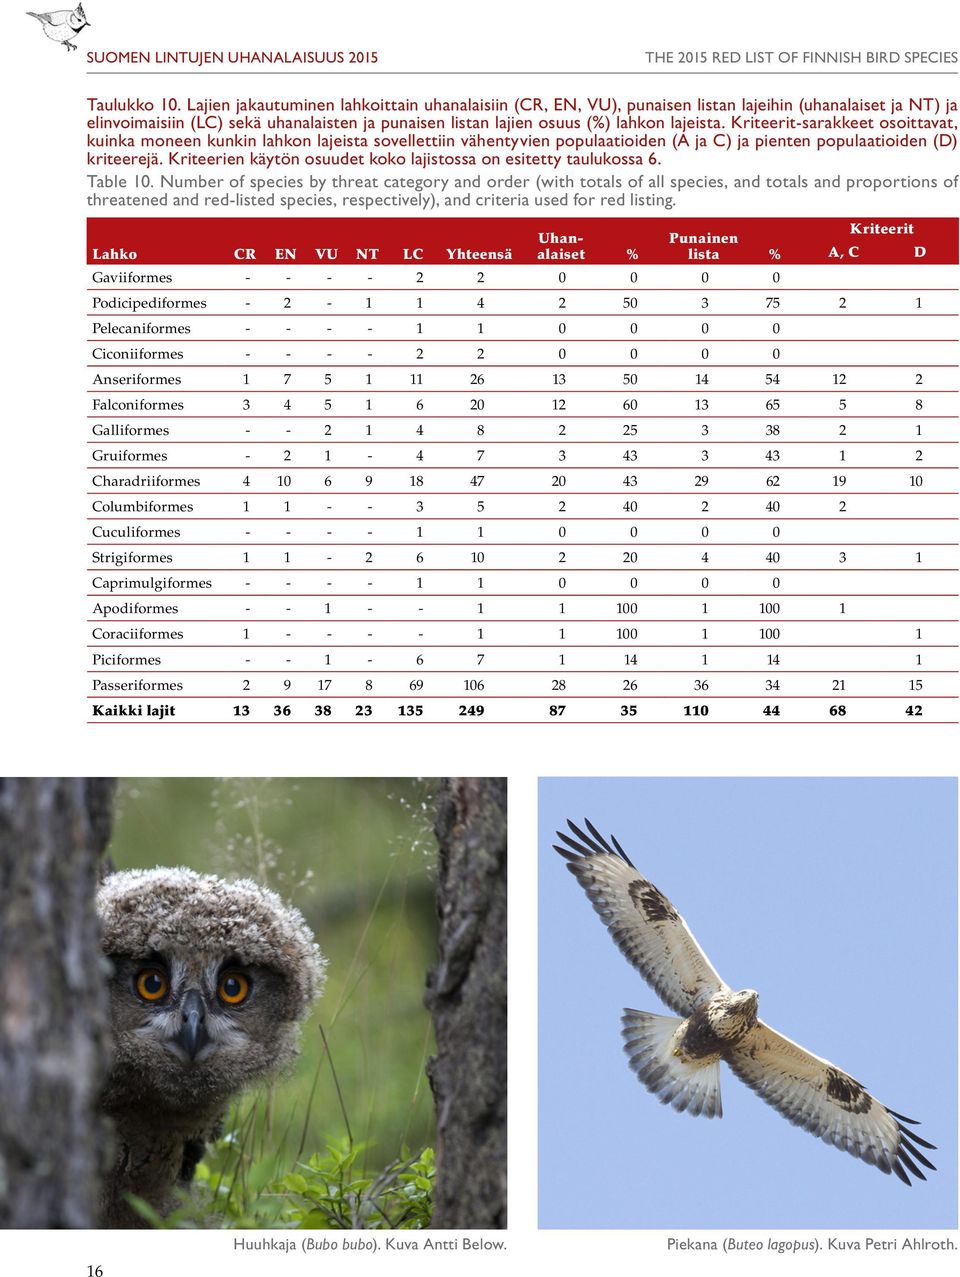 Kriteerit-sarakkeet osoittavat, kuinka moneen kunkin lahkon lajeista sovellettiin vähentyvien populaatioiden (A ja C) ja pienten populaatioiden (D) kriteerejä.